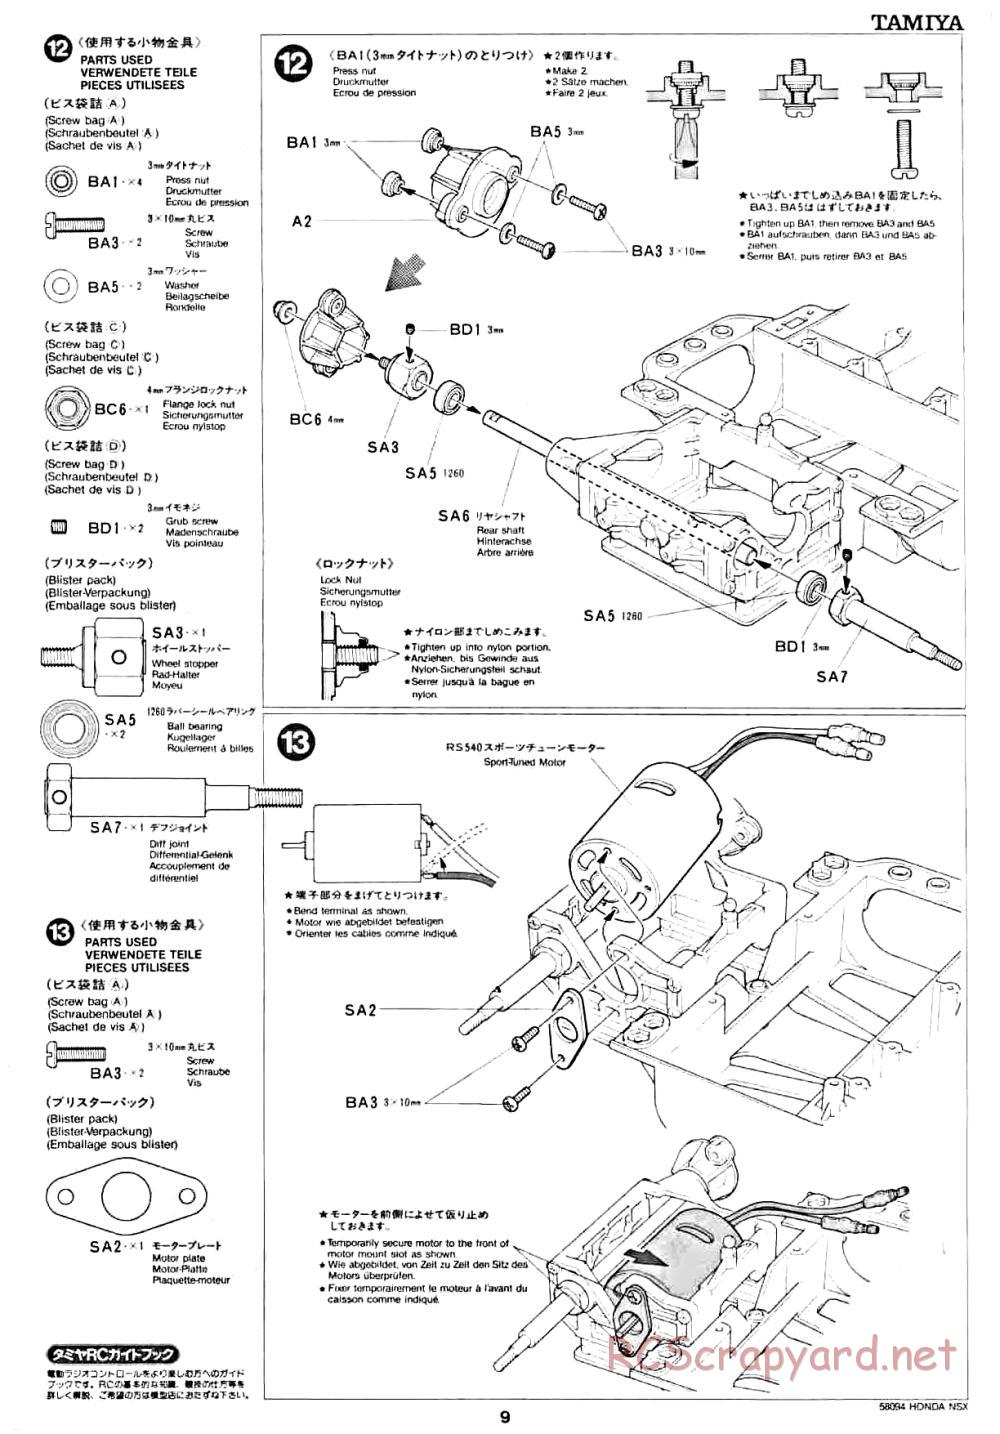 Tamiya - Honda NSX - 58094 - Manual - Page 9